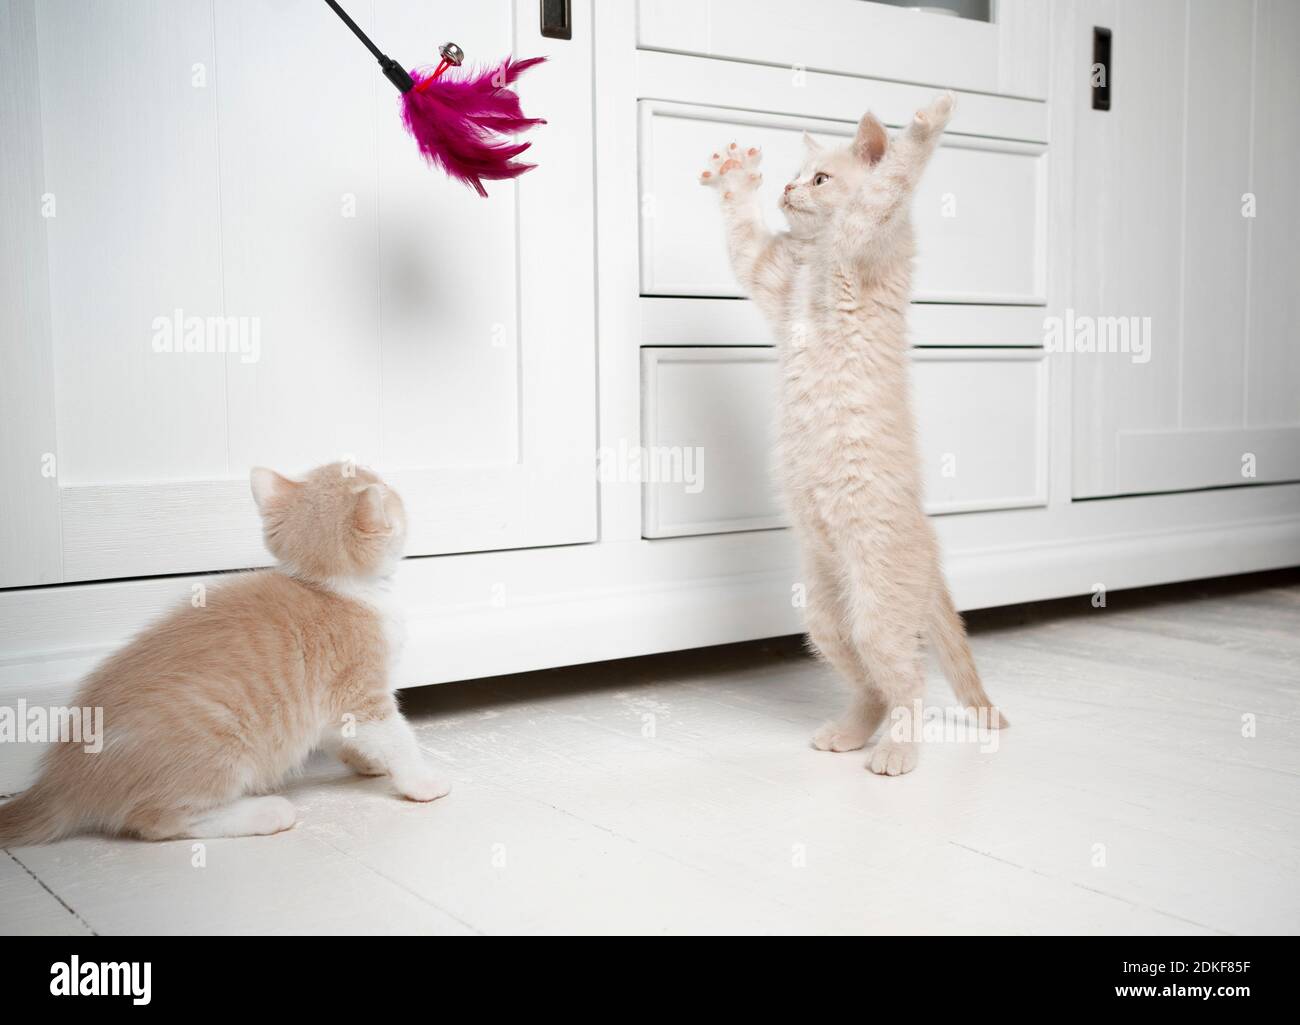 deux chatons de shorthair britanniques de tabby crème jouant avec le jouet de plumes Banque D'Images